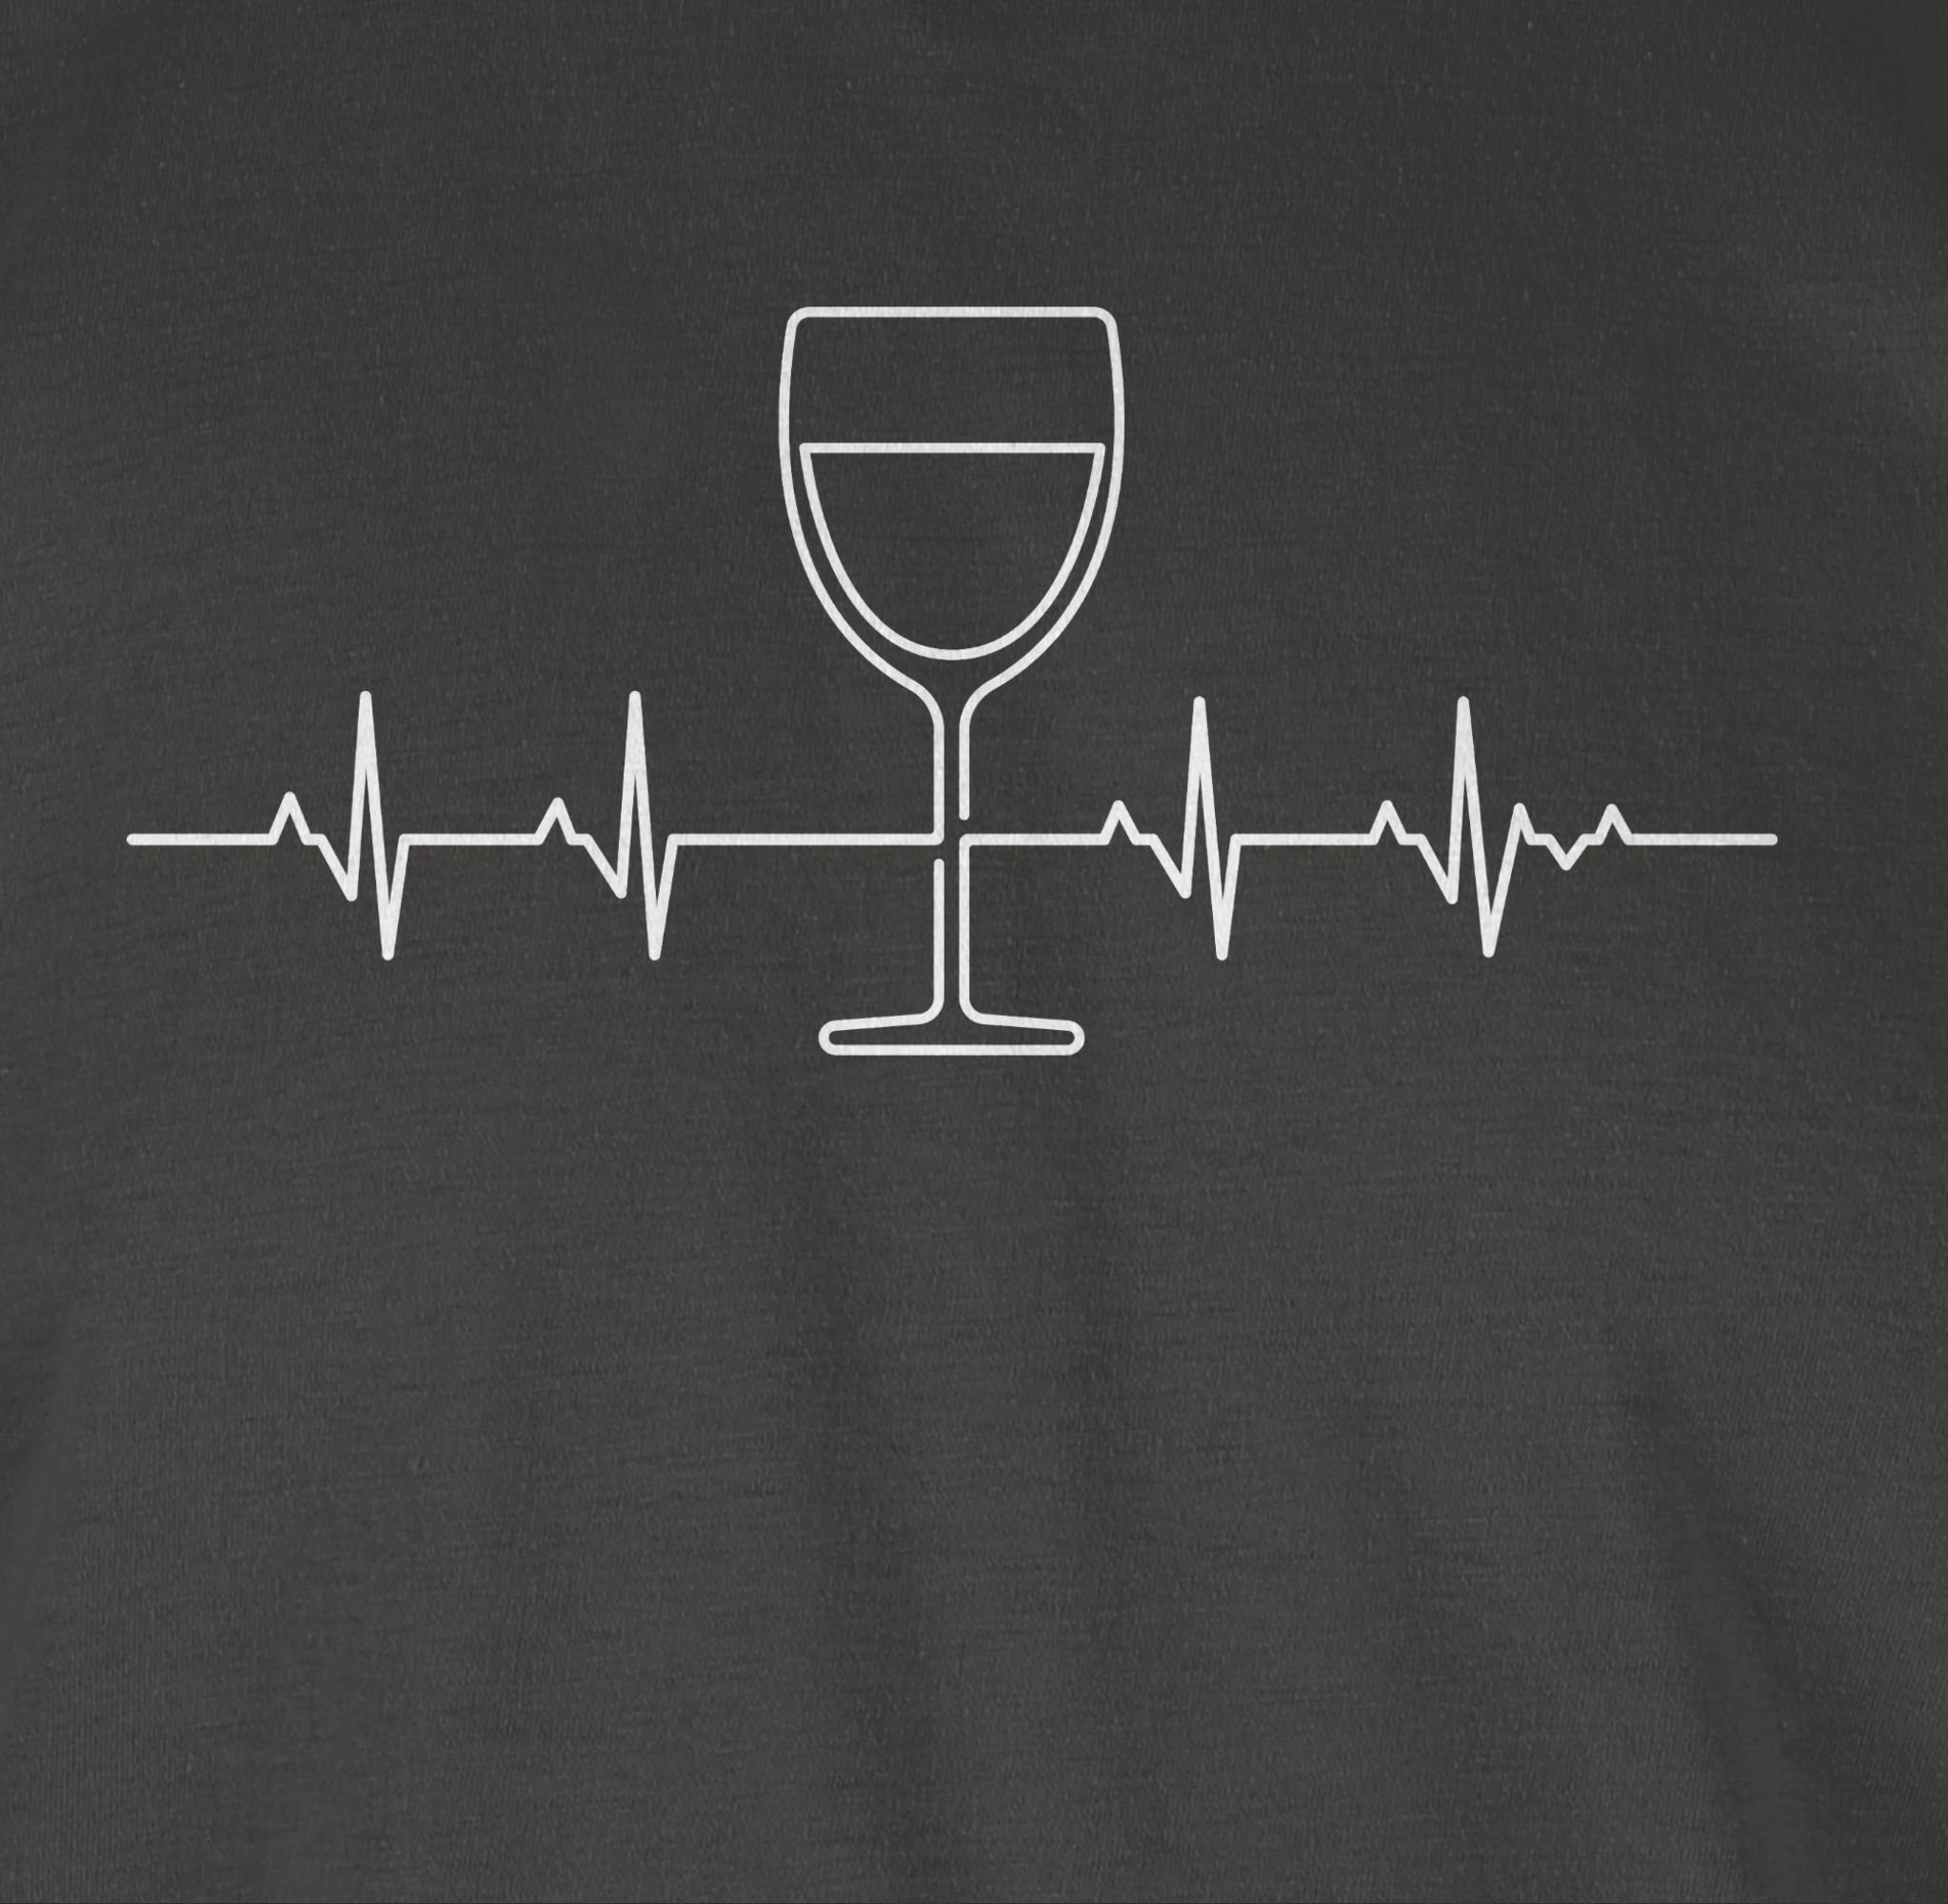 T-Shirt Weinliebhaber Zeichen Wein Dunkelgrau 03 Symbol Herzschlag Shirtracer Outfit Vino und